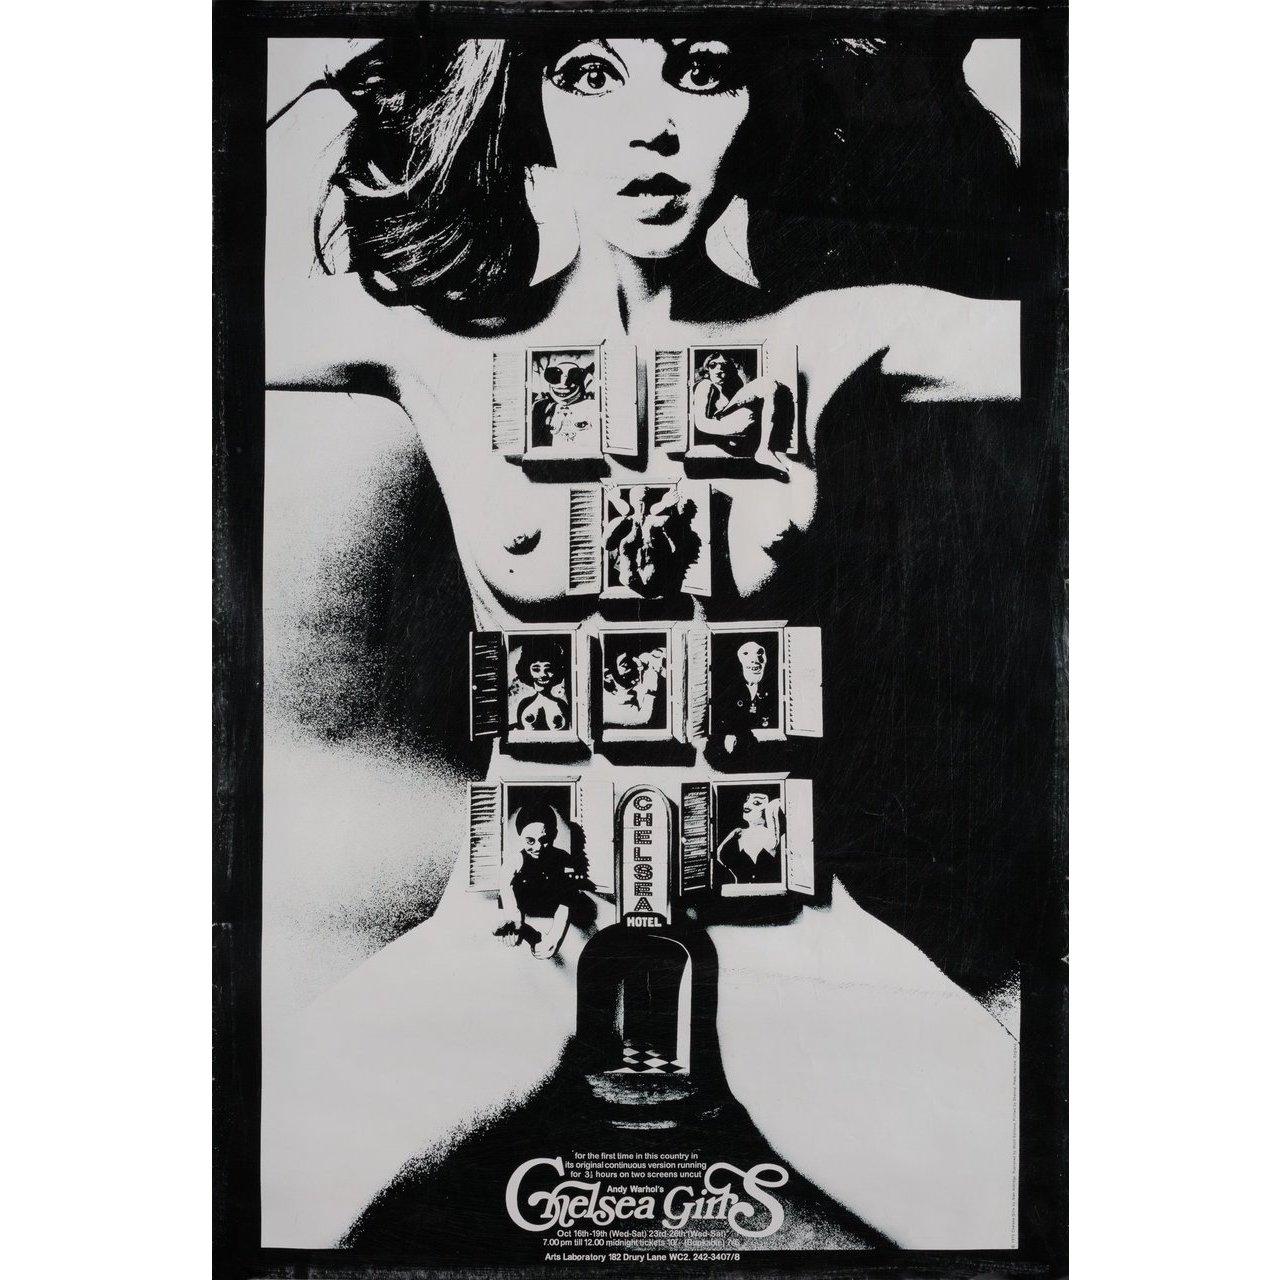 Originales britisches Doppelkronenplakat von Alan Aldridge aus dem Jahr 1970 für den Film Chelsea Girls von 1966 unter der Regie von Paul Morrissey / Andy Warhol mit Brigid Berlin / Randy Borscheidt / Ari Boulogne / Angelina 'Pepper' Davis. Sehr